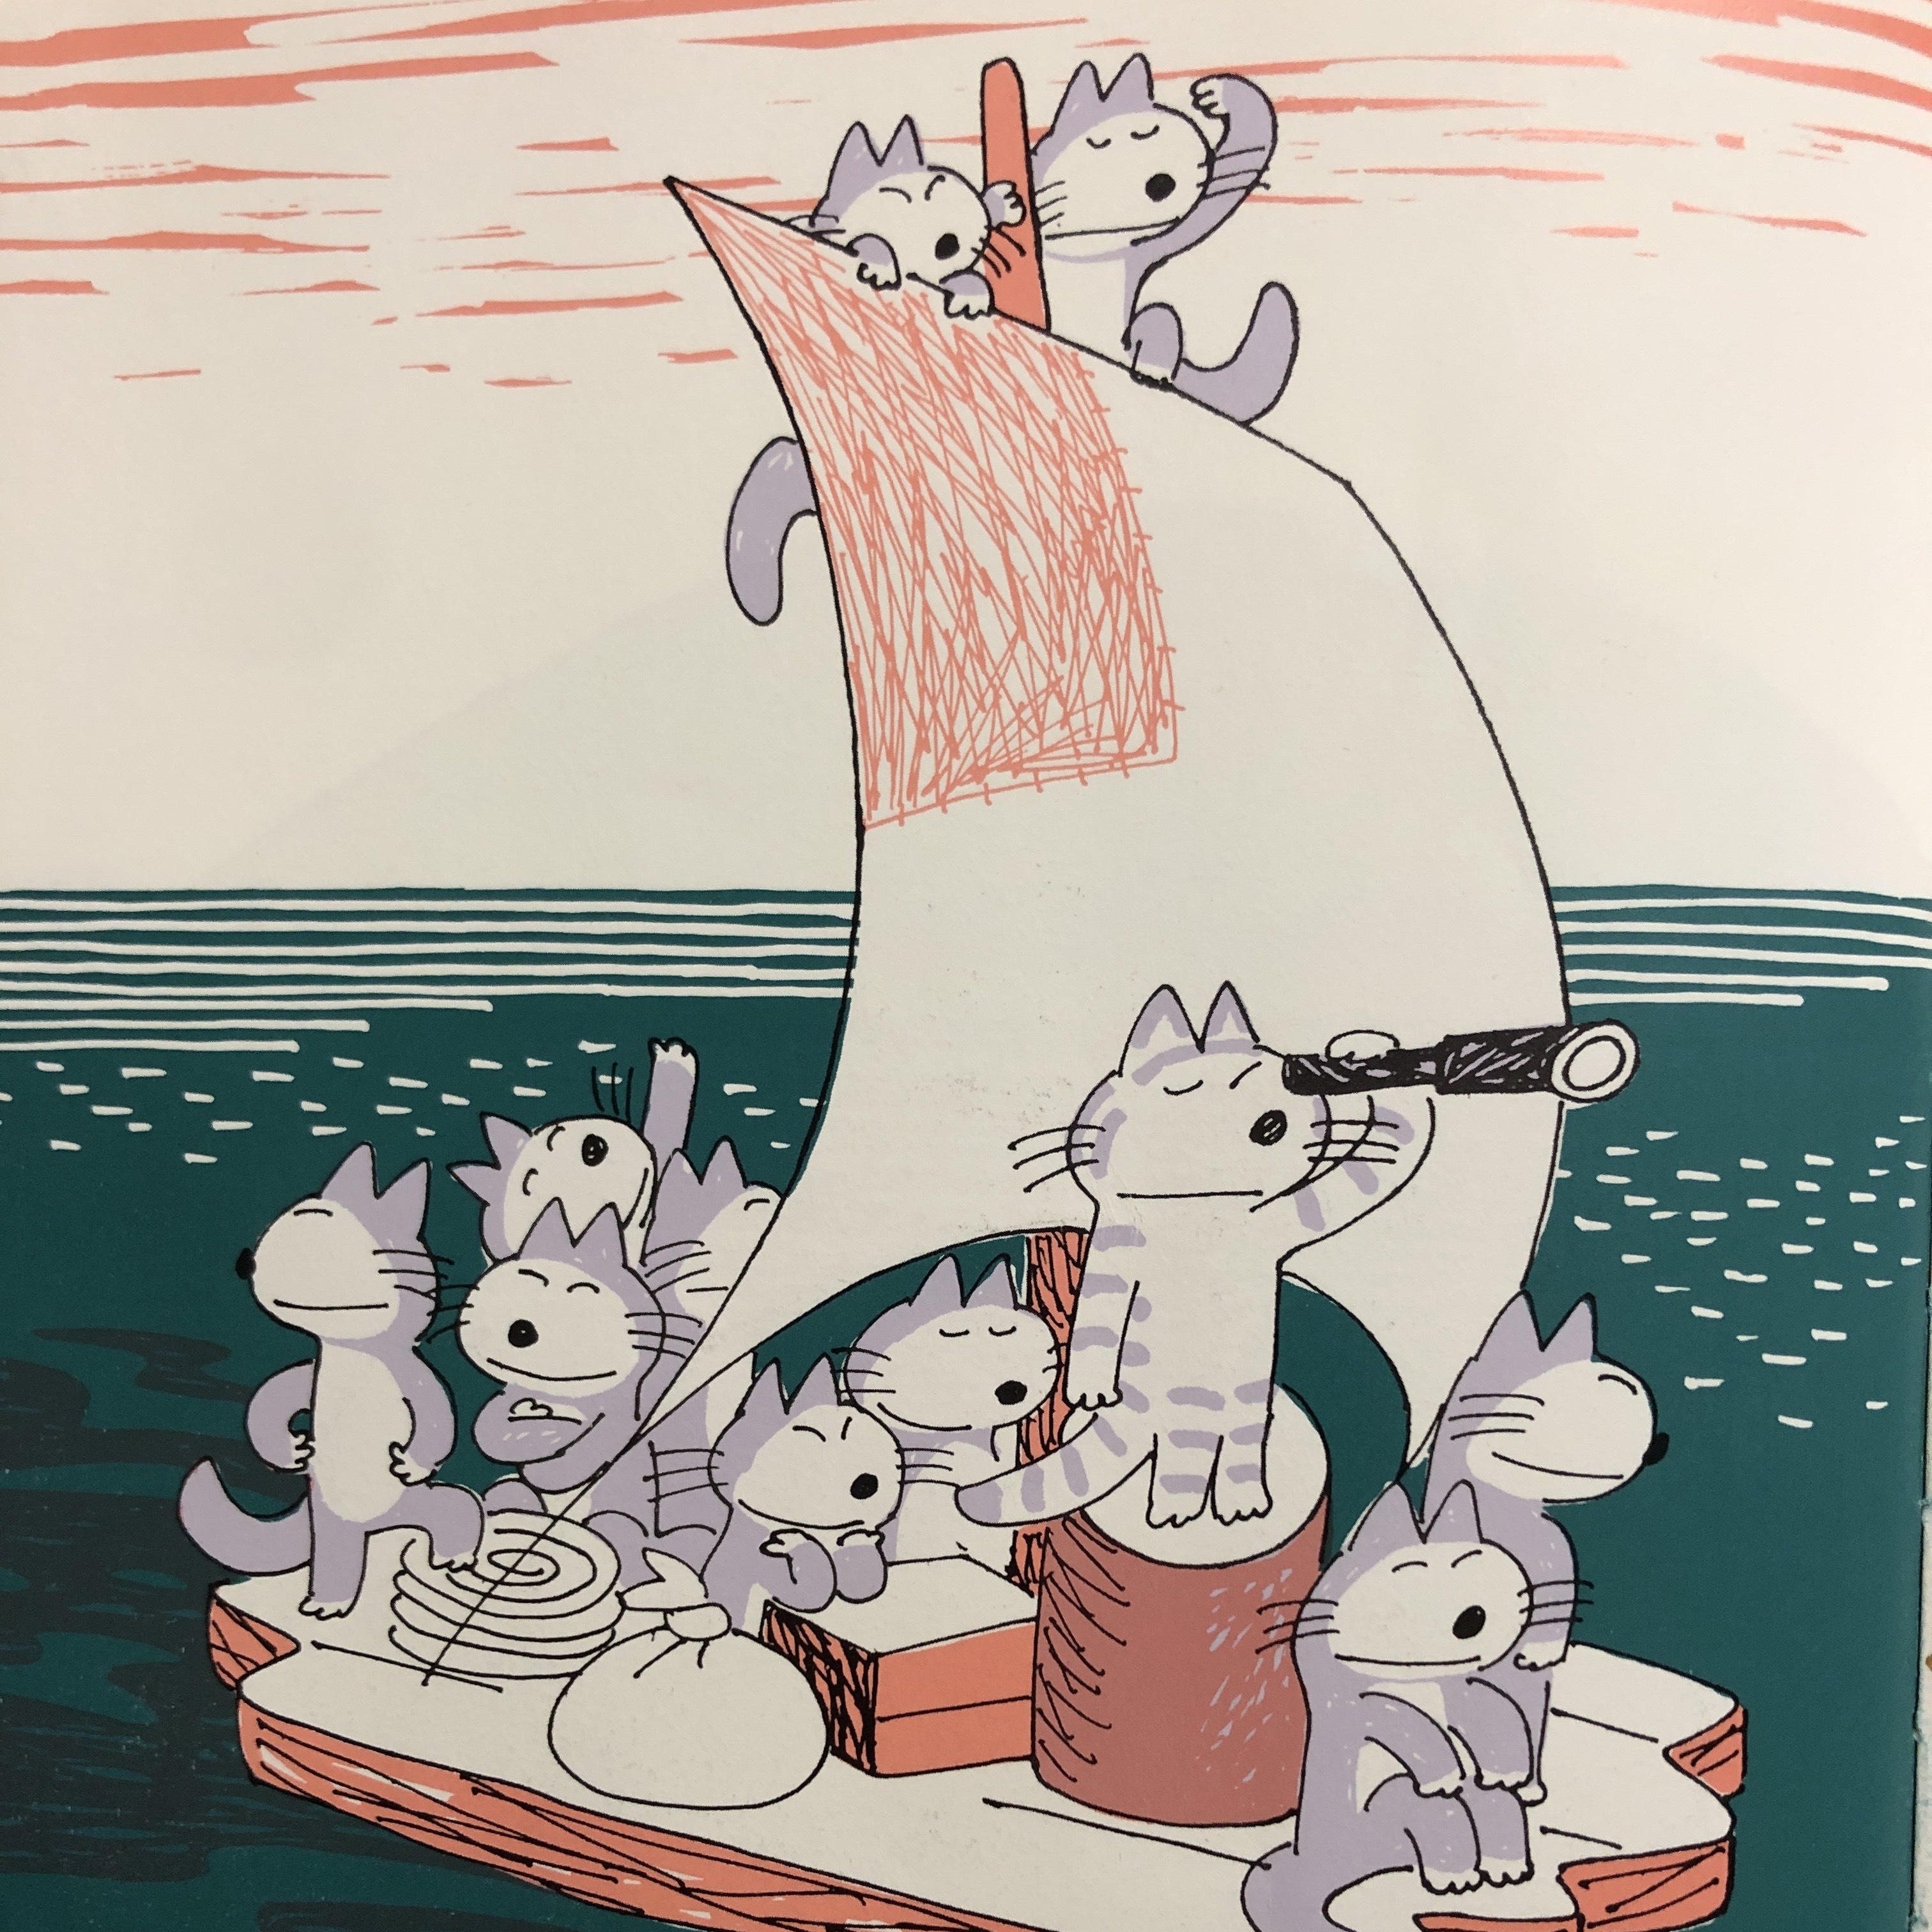 後記：日本的貓繪本真的很多，尤其喜歡畫成群結隊的貓！最經典的就是馬場登（1927~2001）的「11隻貓」系列，不會硬要說教的無厘頭風格，在風靡超過半個世紀之後的今天仍然是非常值得一看的故事；近年還有很受歡迎的「野貓軍團」系列。這兩個系列的貓咪長相大不同，馬場登的貓藍白相間、手腳靈活，工藤紀子（1970~）的貓則黃黃圓圓，一臉賊頭賊腦的搞笑模樣，不過，這兩團野貓的共同特色就是喜歡團進團出，一起調皮搗蛋搞事，幽默的情節讓人看了都會哈哈大笑。圖左為《11隻貓》（11ぴきのねこ）內頁，圖右為《野貓軍團飛上天》（ノラネコぐんだんそらをとぶ）內頁。